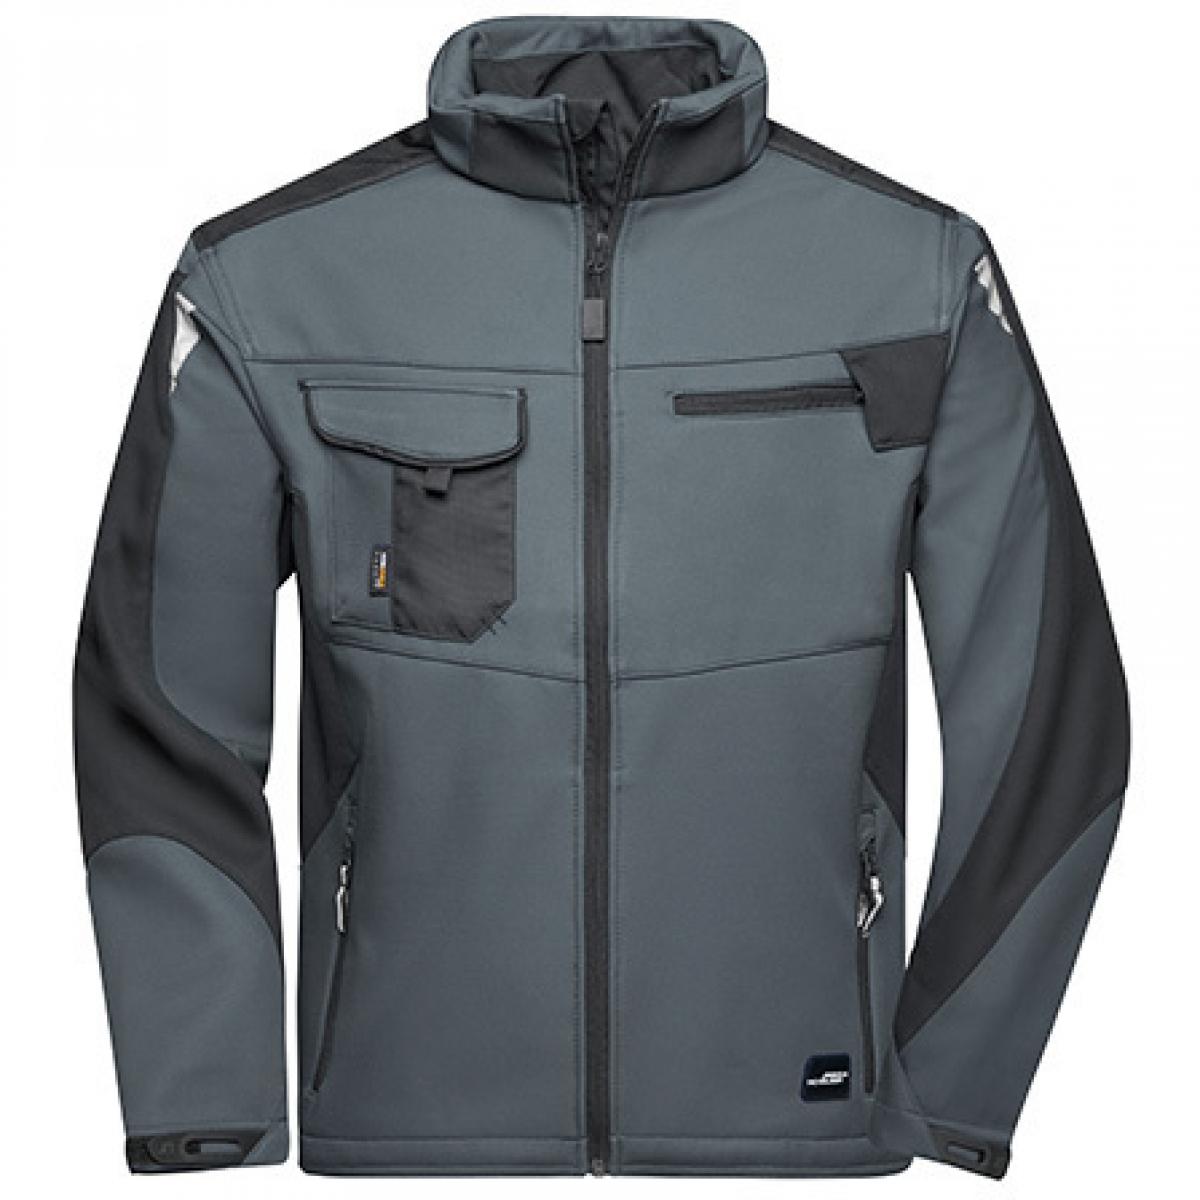 Hersteller: James+Nicholson Herstellernummer: JN844 Artikelbezeichnung: Herren Jacke, Workwear Softshell Jacket -STRONG- Farbe: Carbon/Black